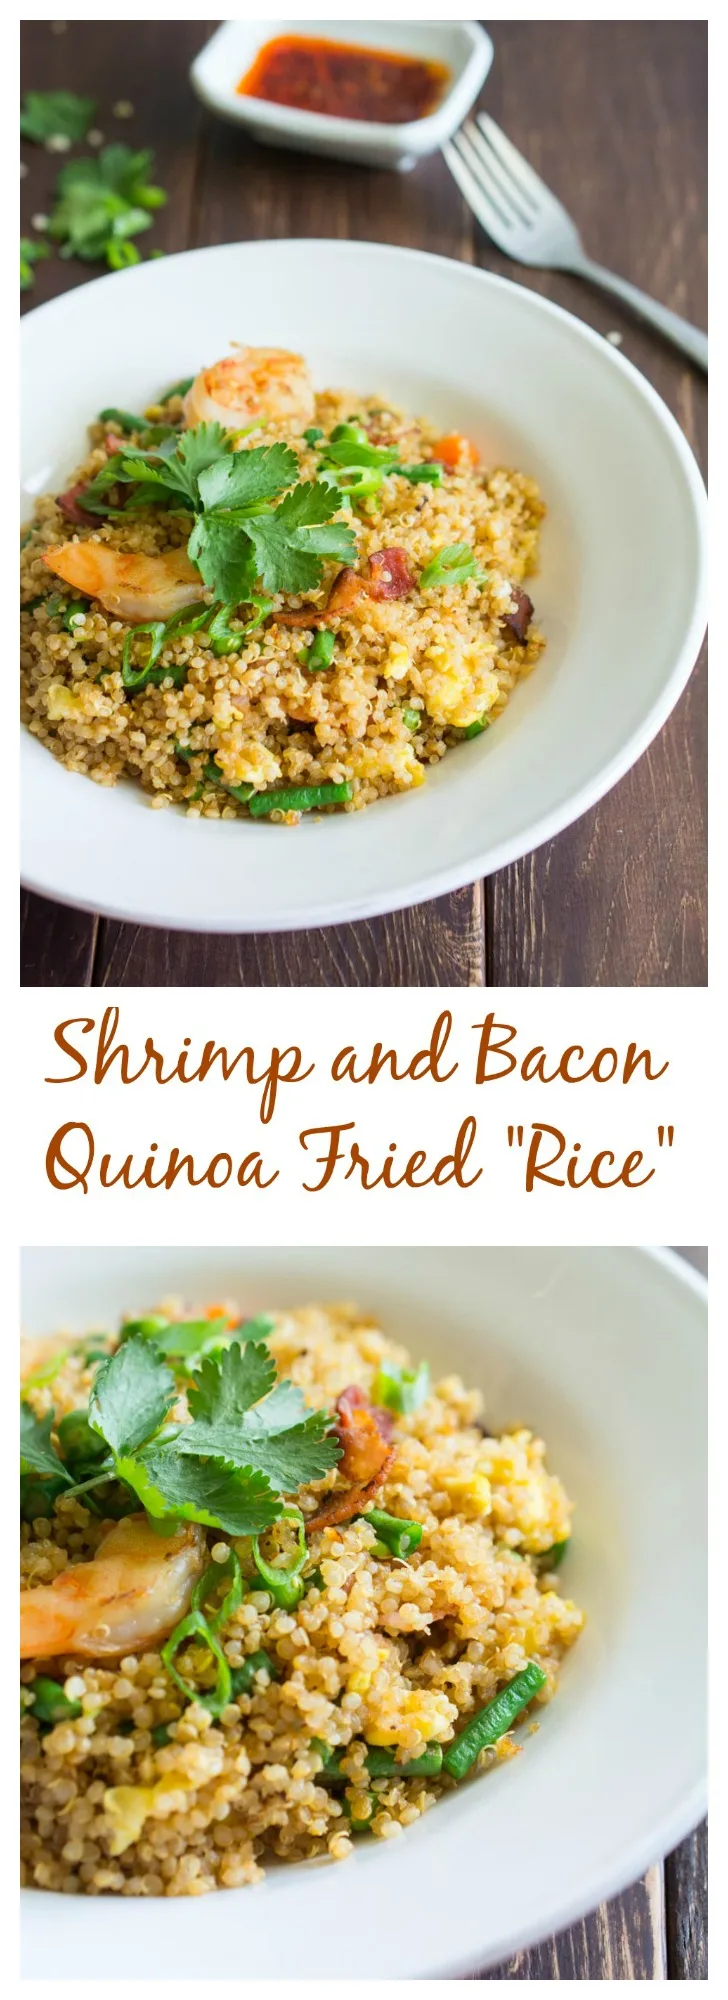 Shrimp and Bacon Quinoa Fried "Rice"